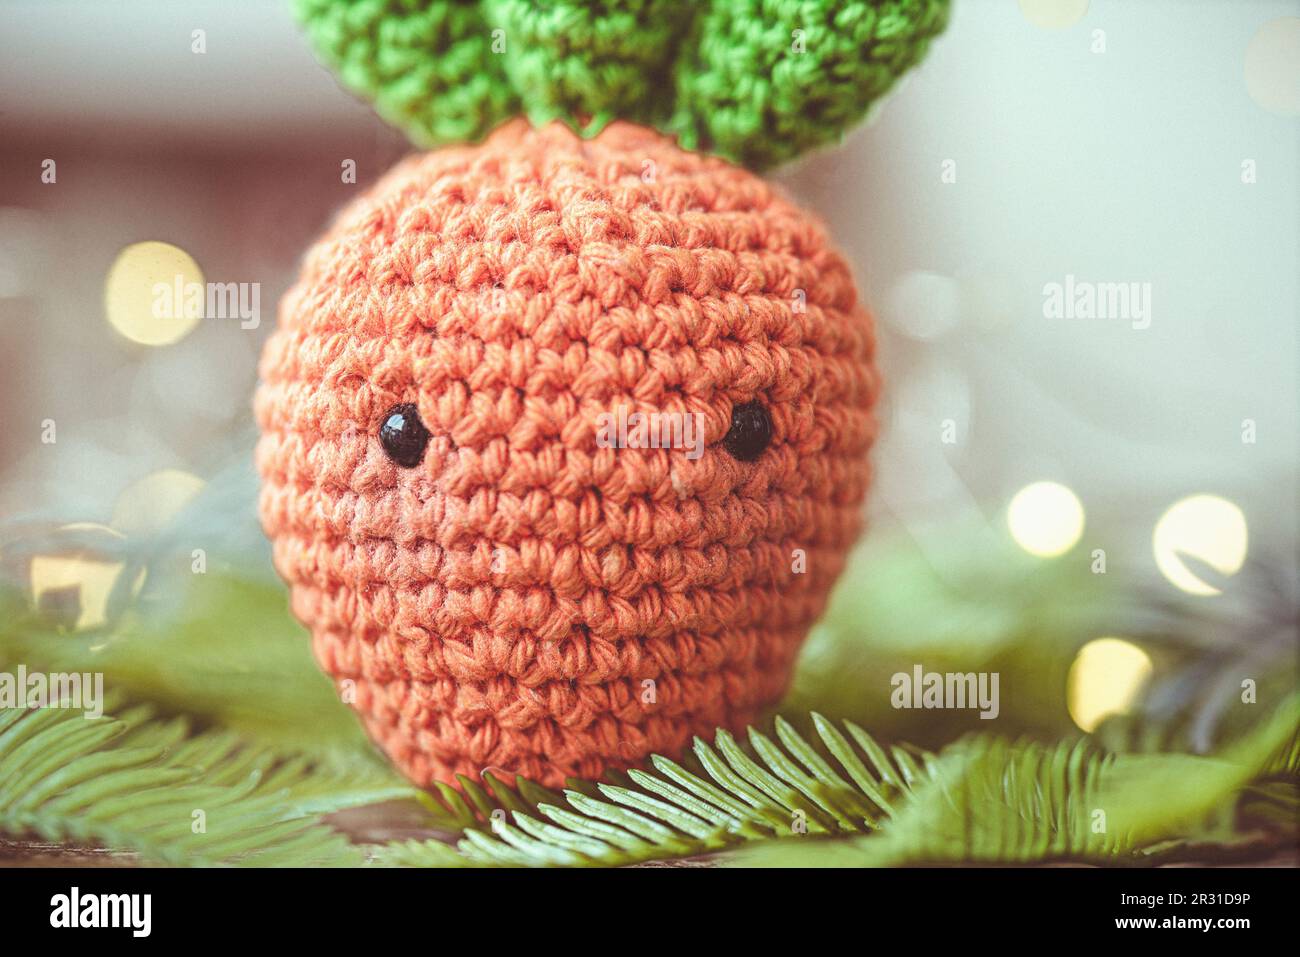 Primo piano di una carota uncinetto (Amigurumi) Foto Stock